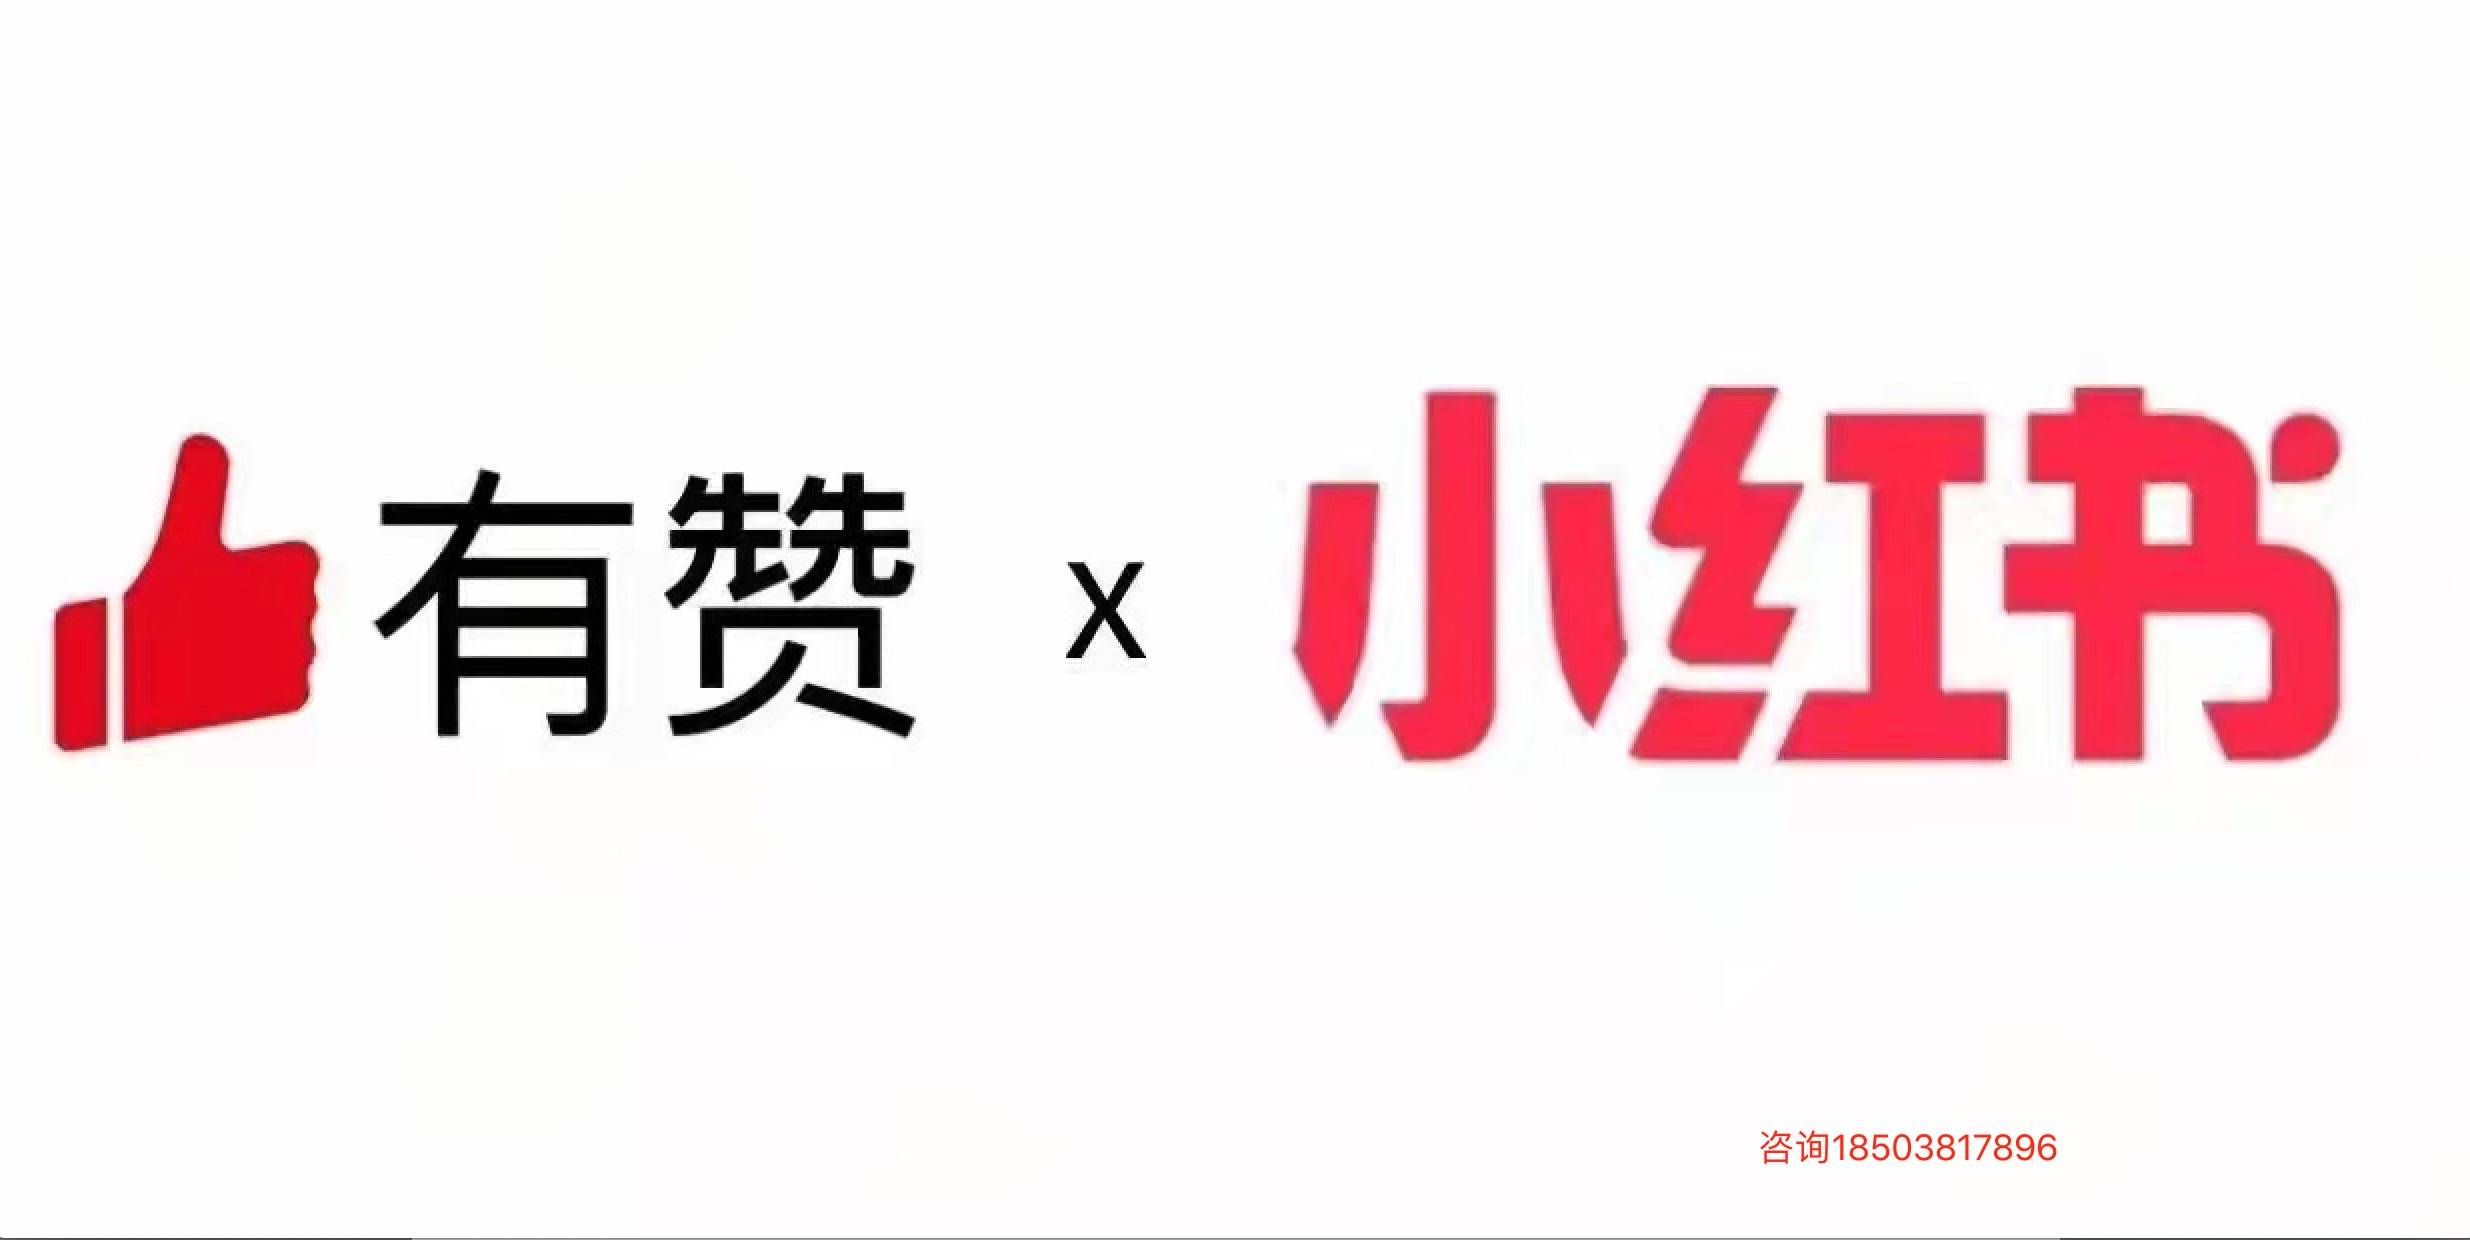 小红书logo原版图片